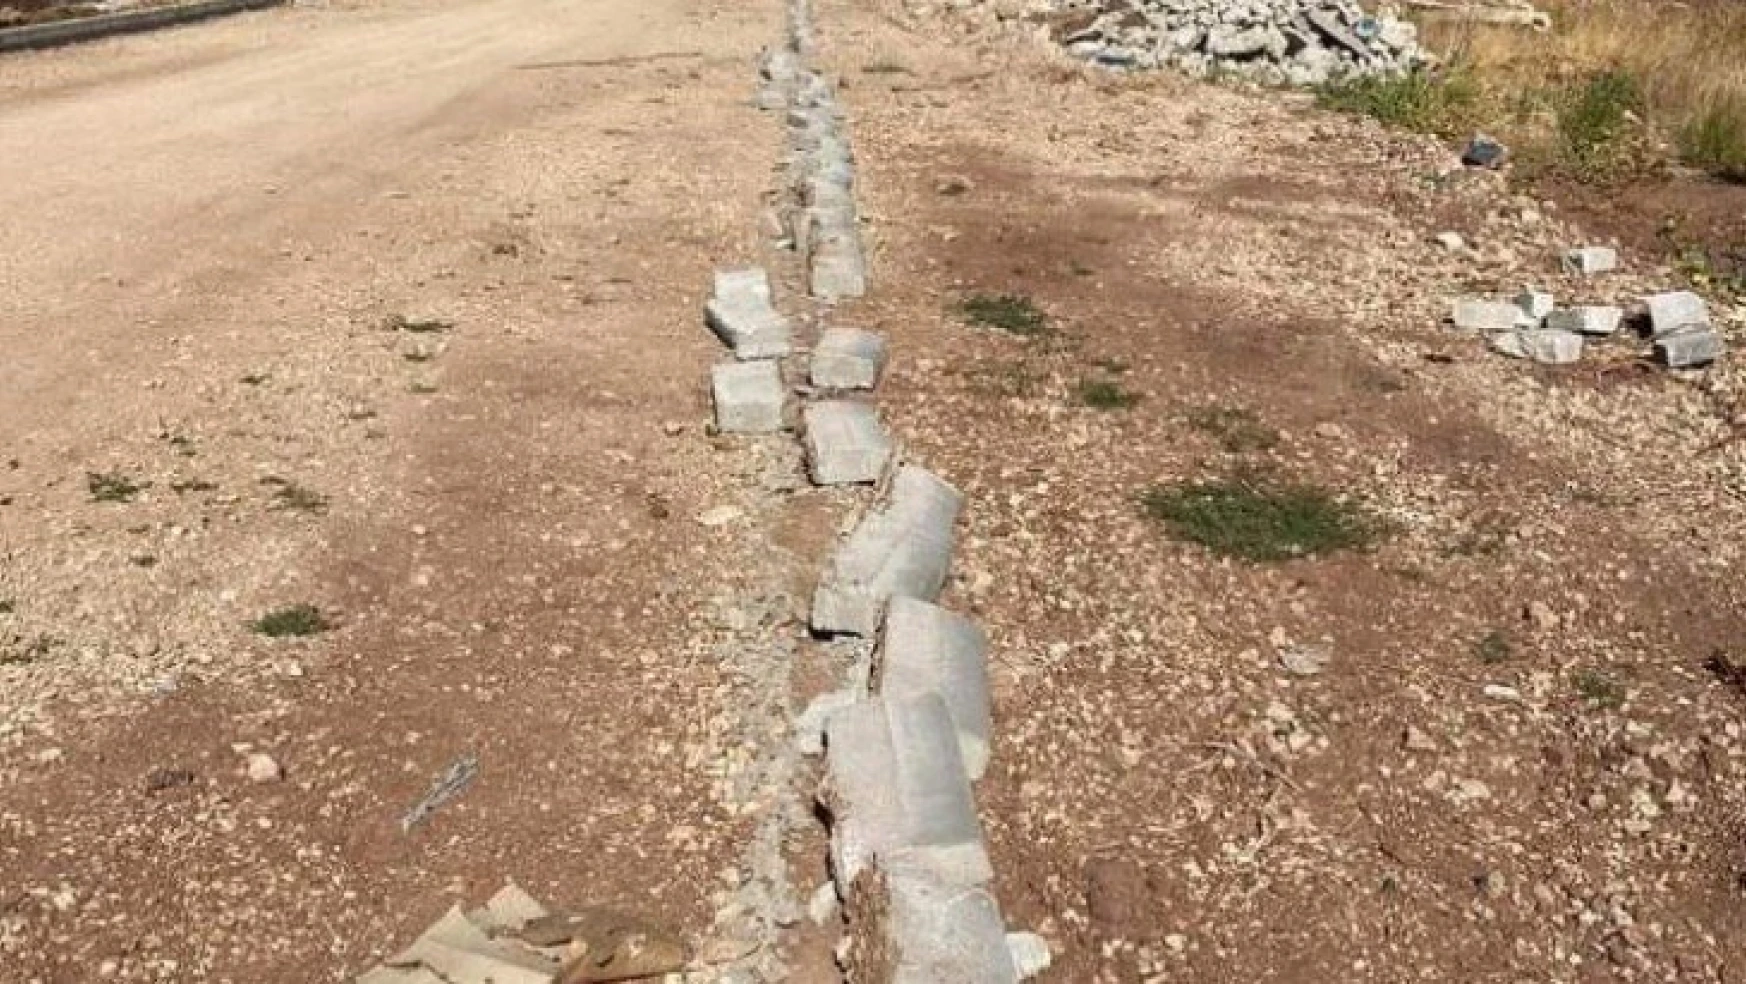 Yeni Mahallede bordür taşlarına zarar verildi